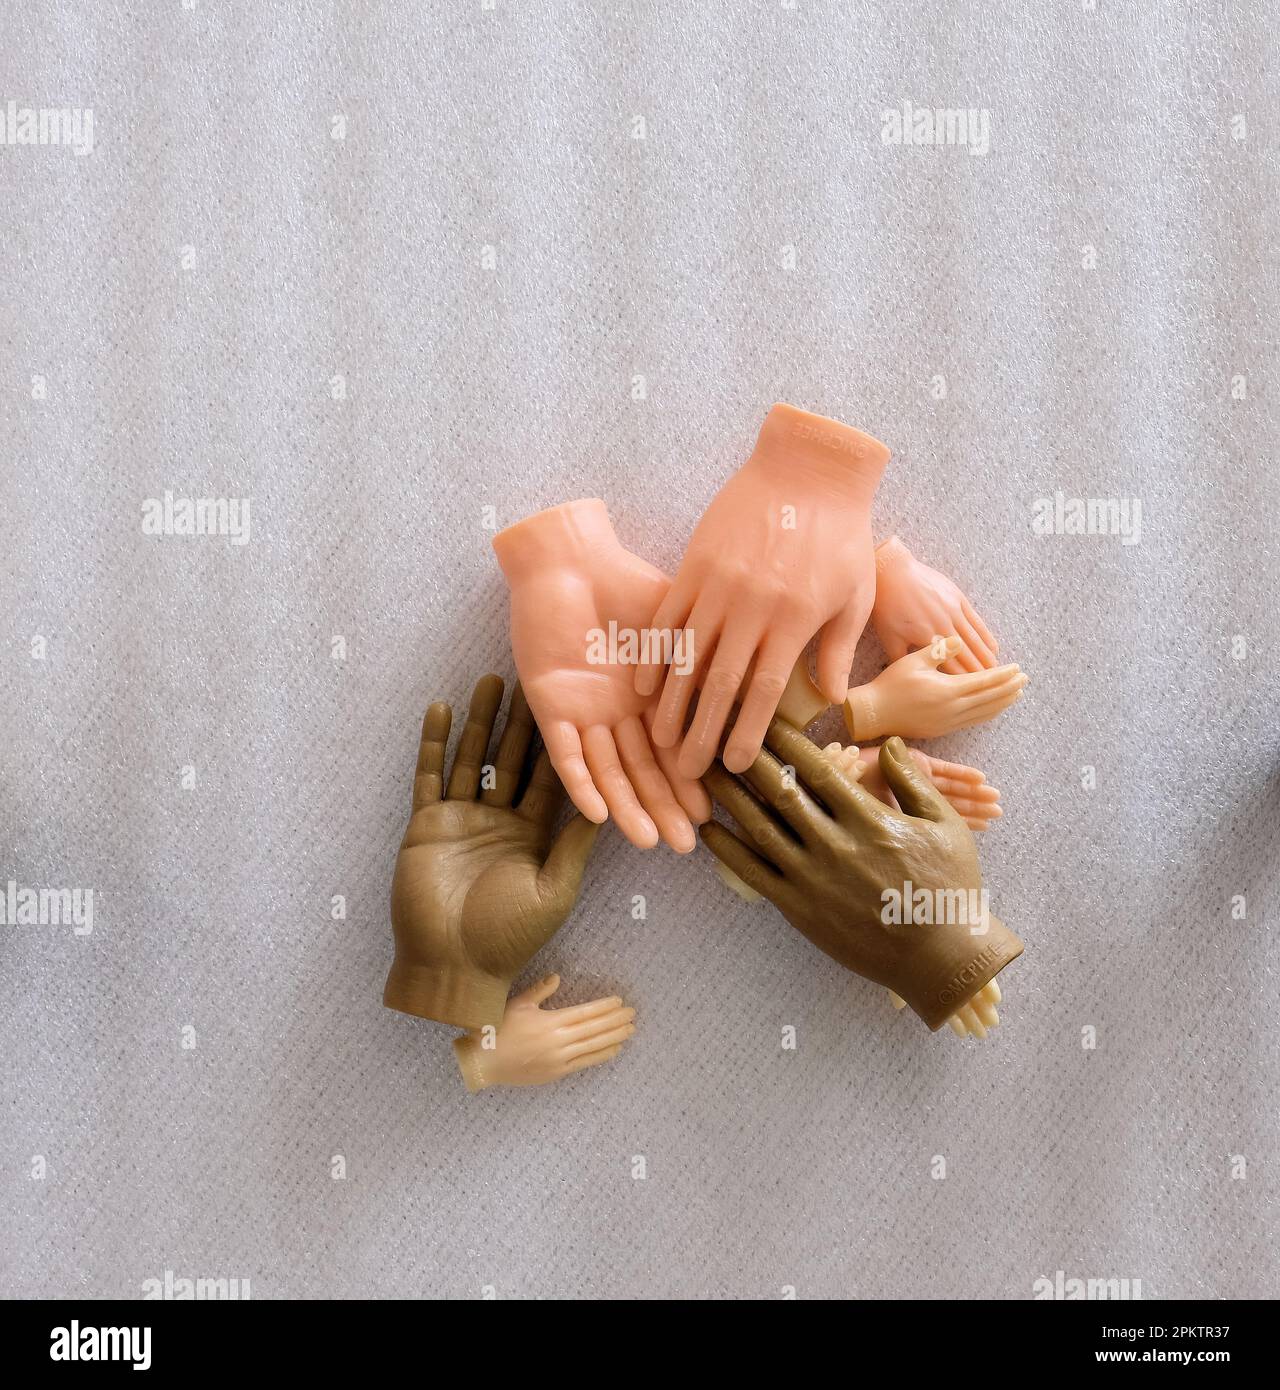 Mani giocattolo in plastica in diverse tonalità della pelle; aiuto, assistenza, armonia, concetto di diversità; le mani di un dito molto piccole. Foto Stock